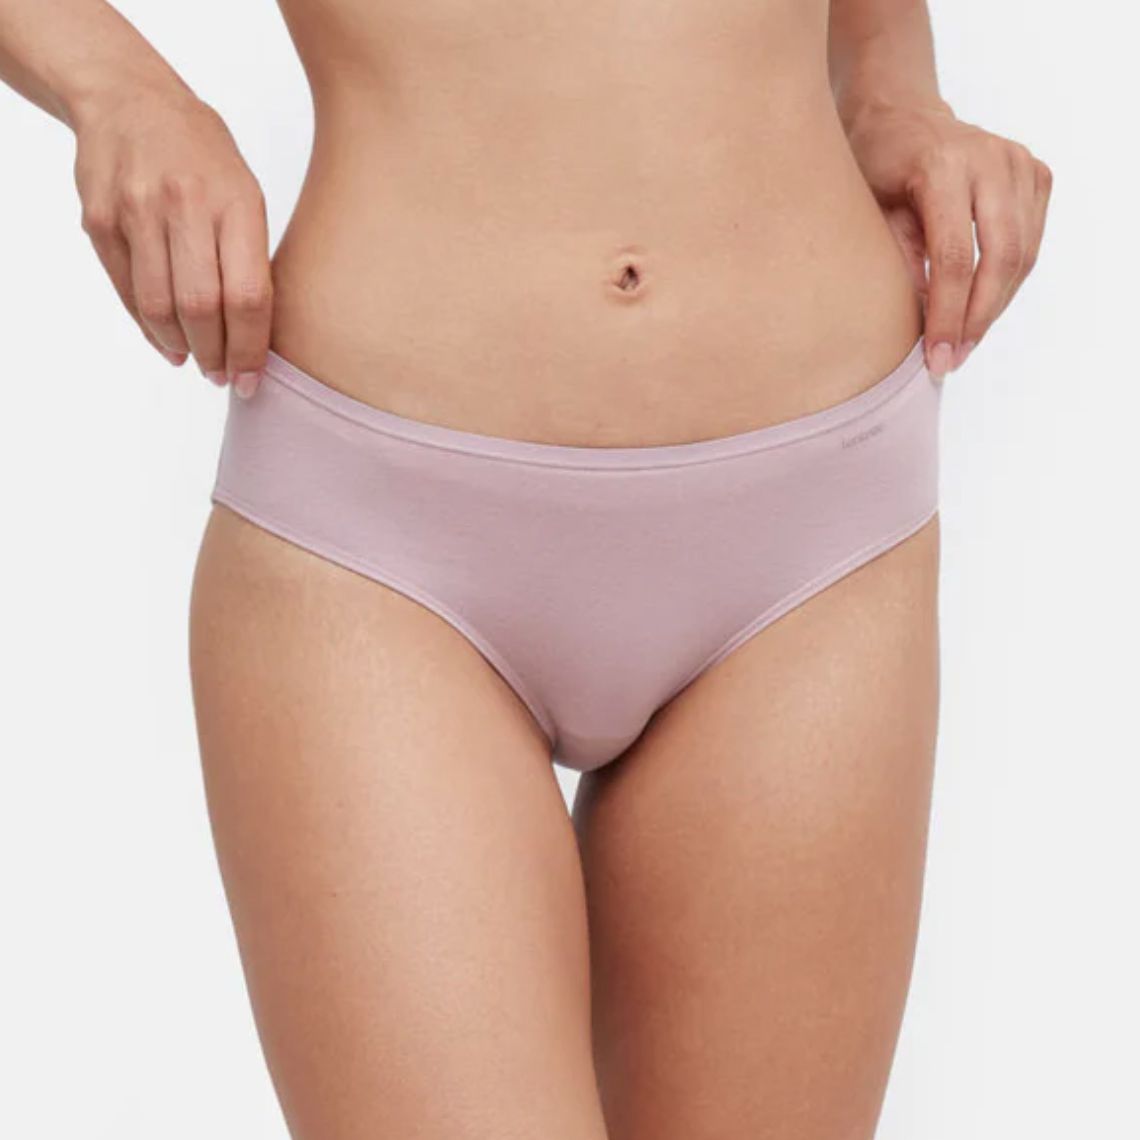 Ethical Underwear: 12 Sustainable Lingerie & Underwear Brands